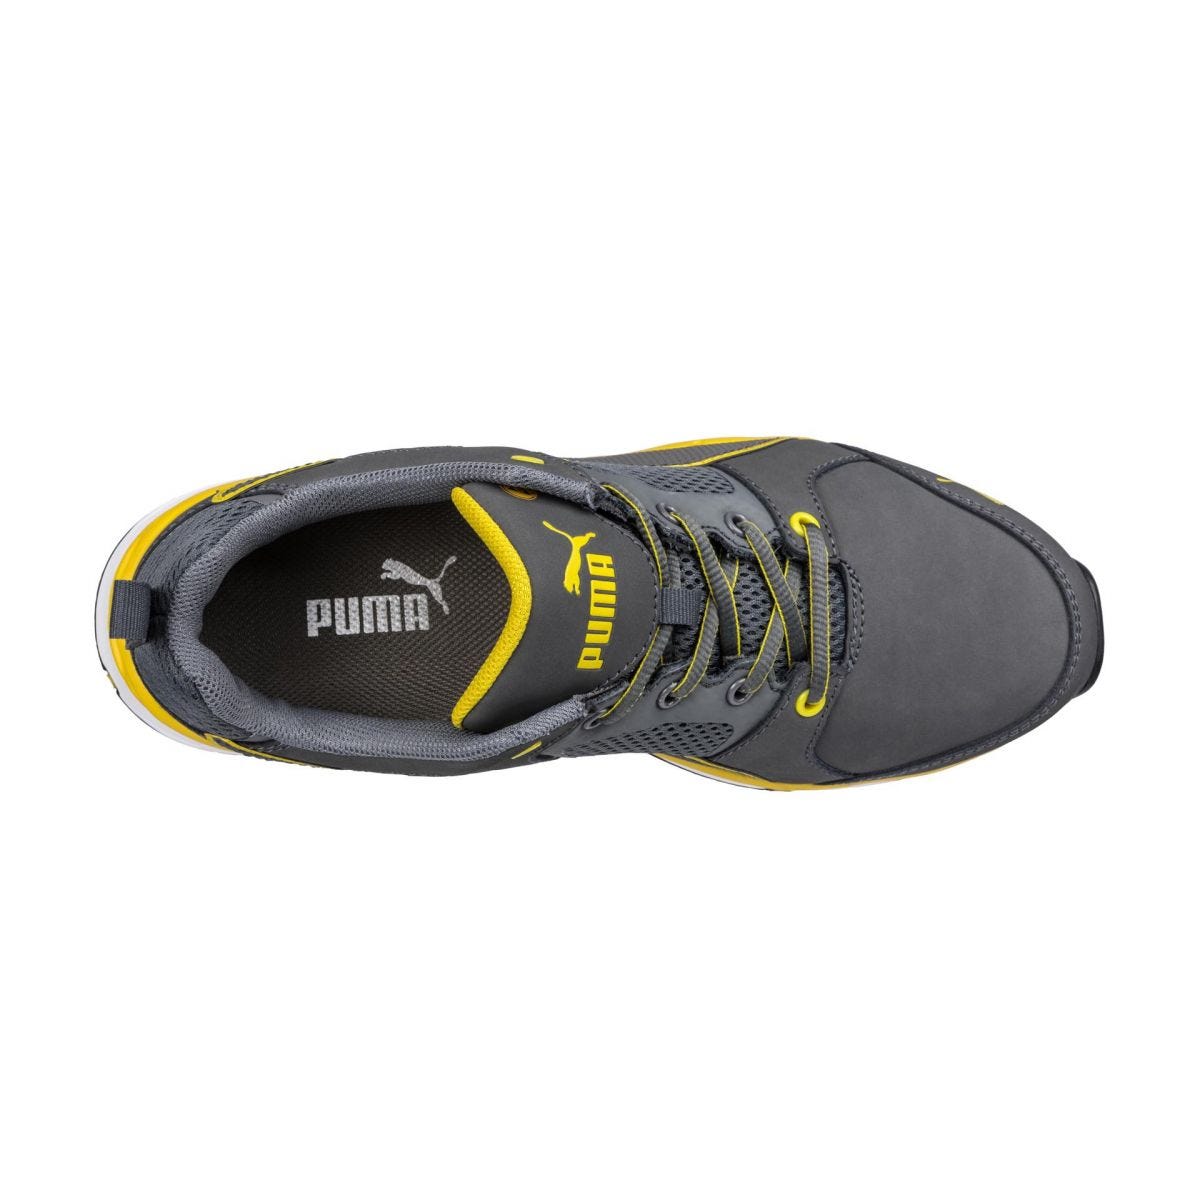 Chaussures de sécurité Pace 2.0 low S1P ESD HRO SRC jaune - Puma - Taille 41 2